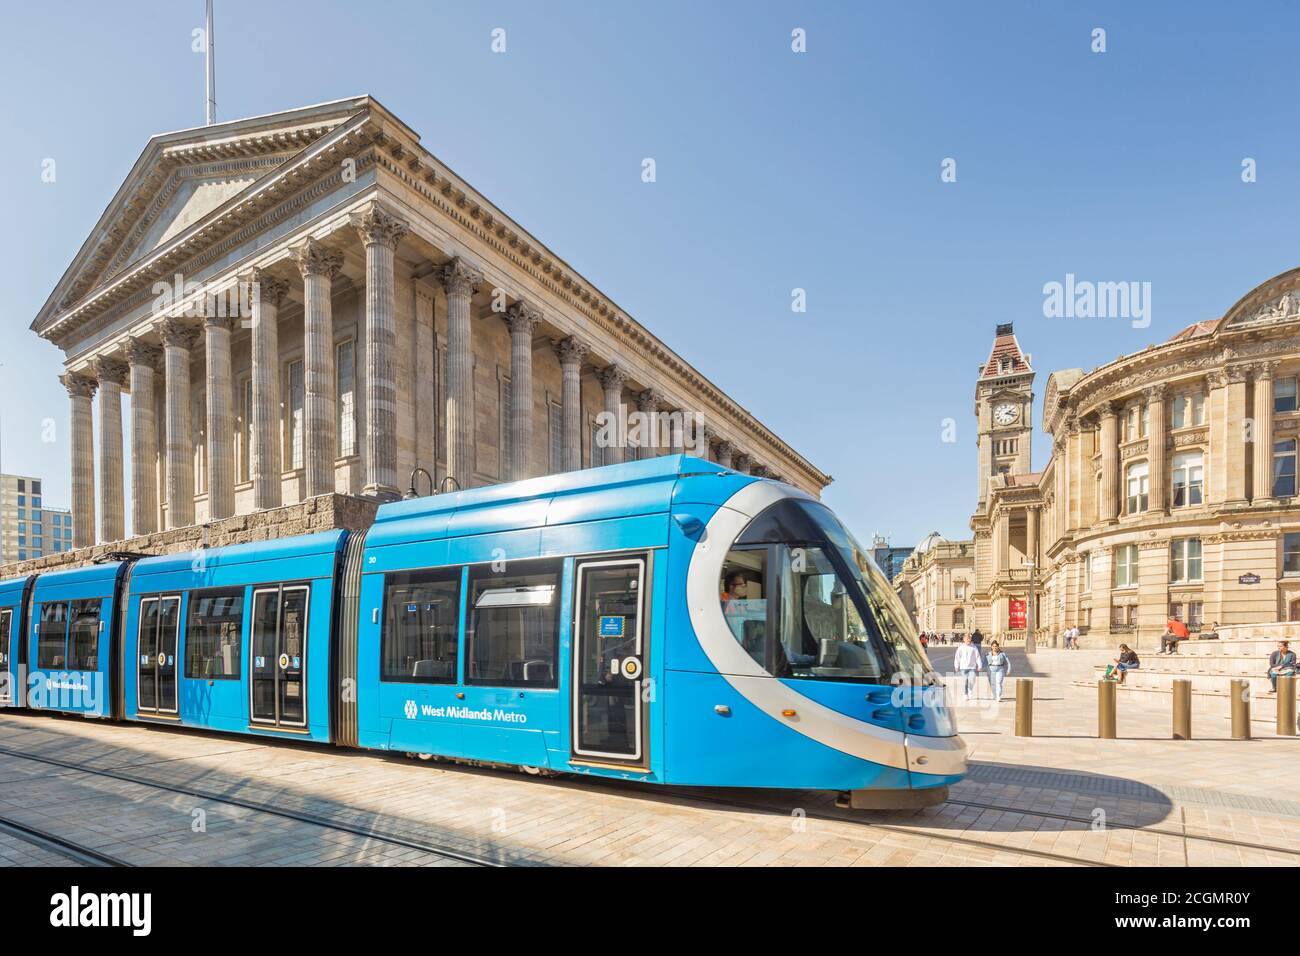 West Midlands Metro, die zwischen Birmingham und Wolverhampton verkehrt, vorbei am Rathaus am Victoria Square, Birmingham, England, Großbritannien Stockfoto